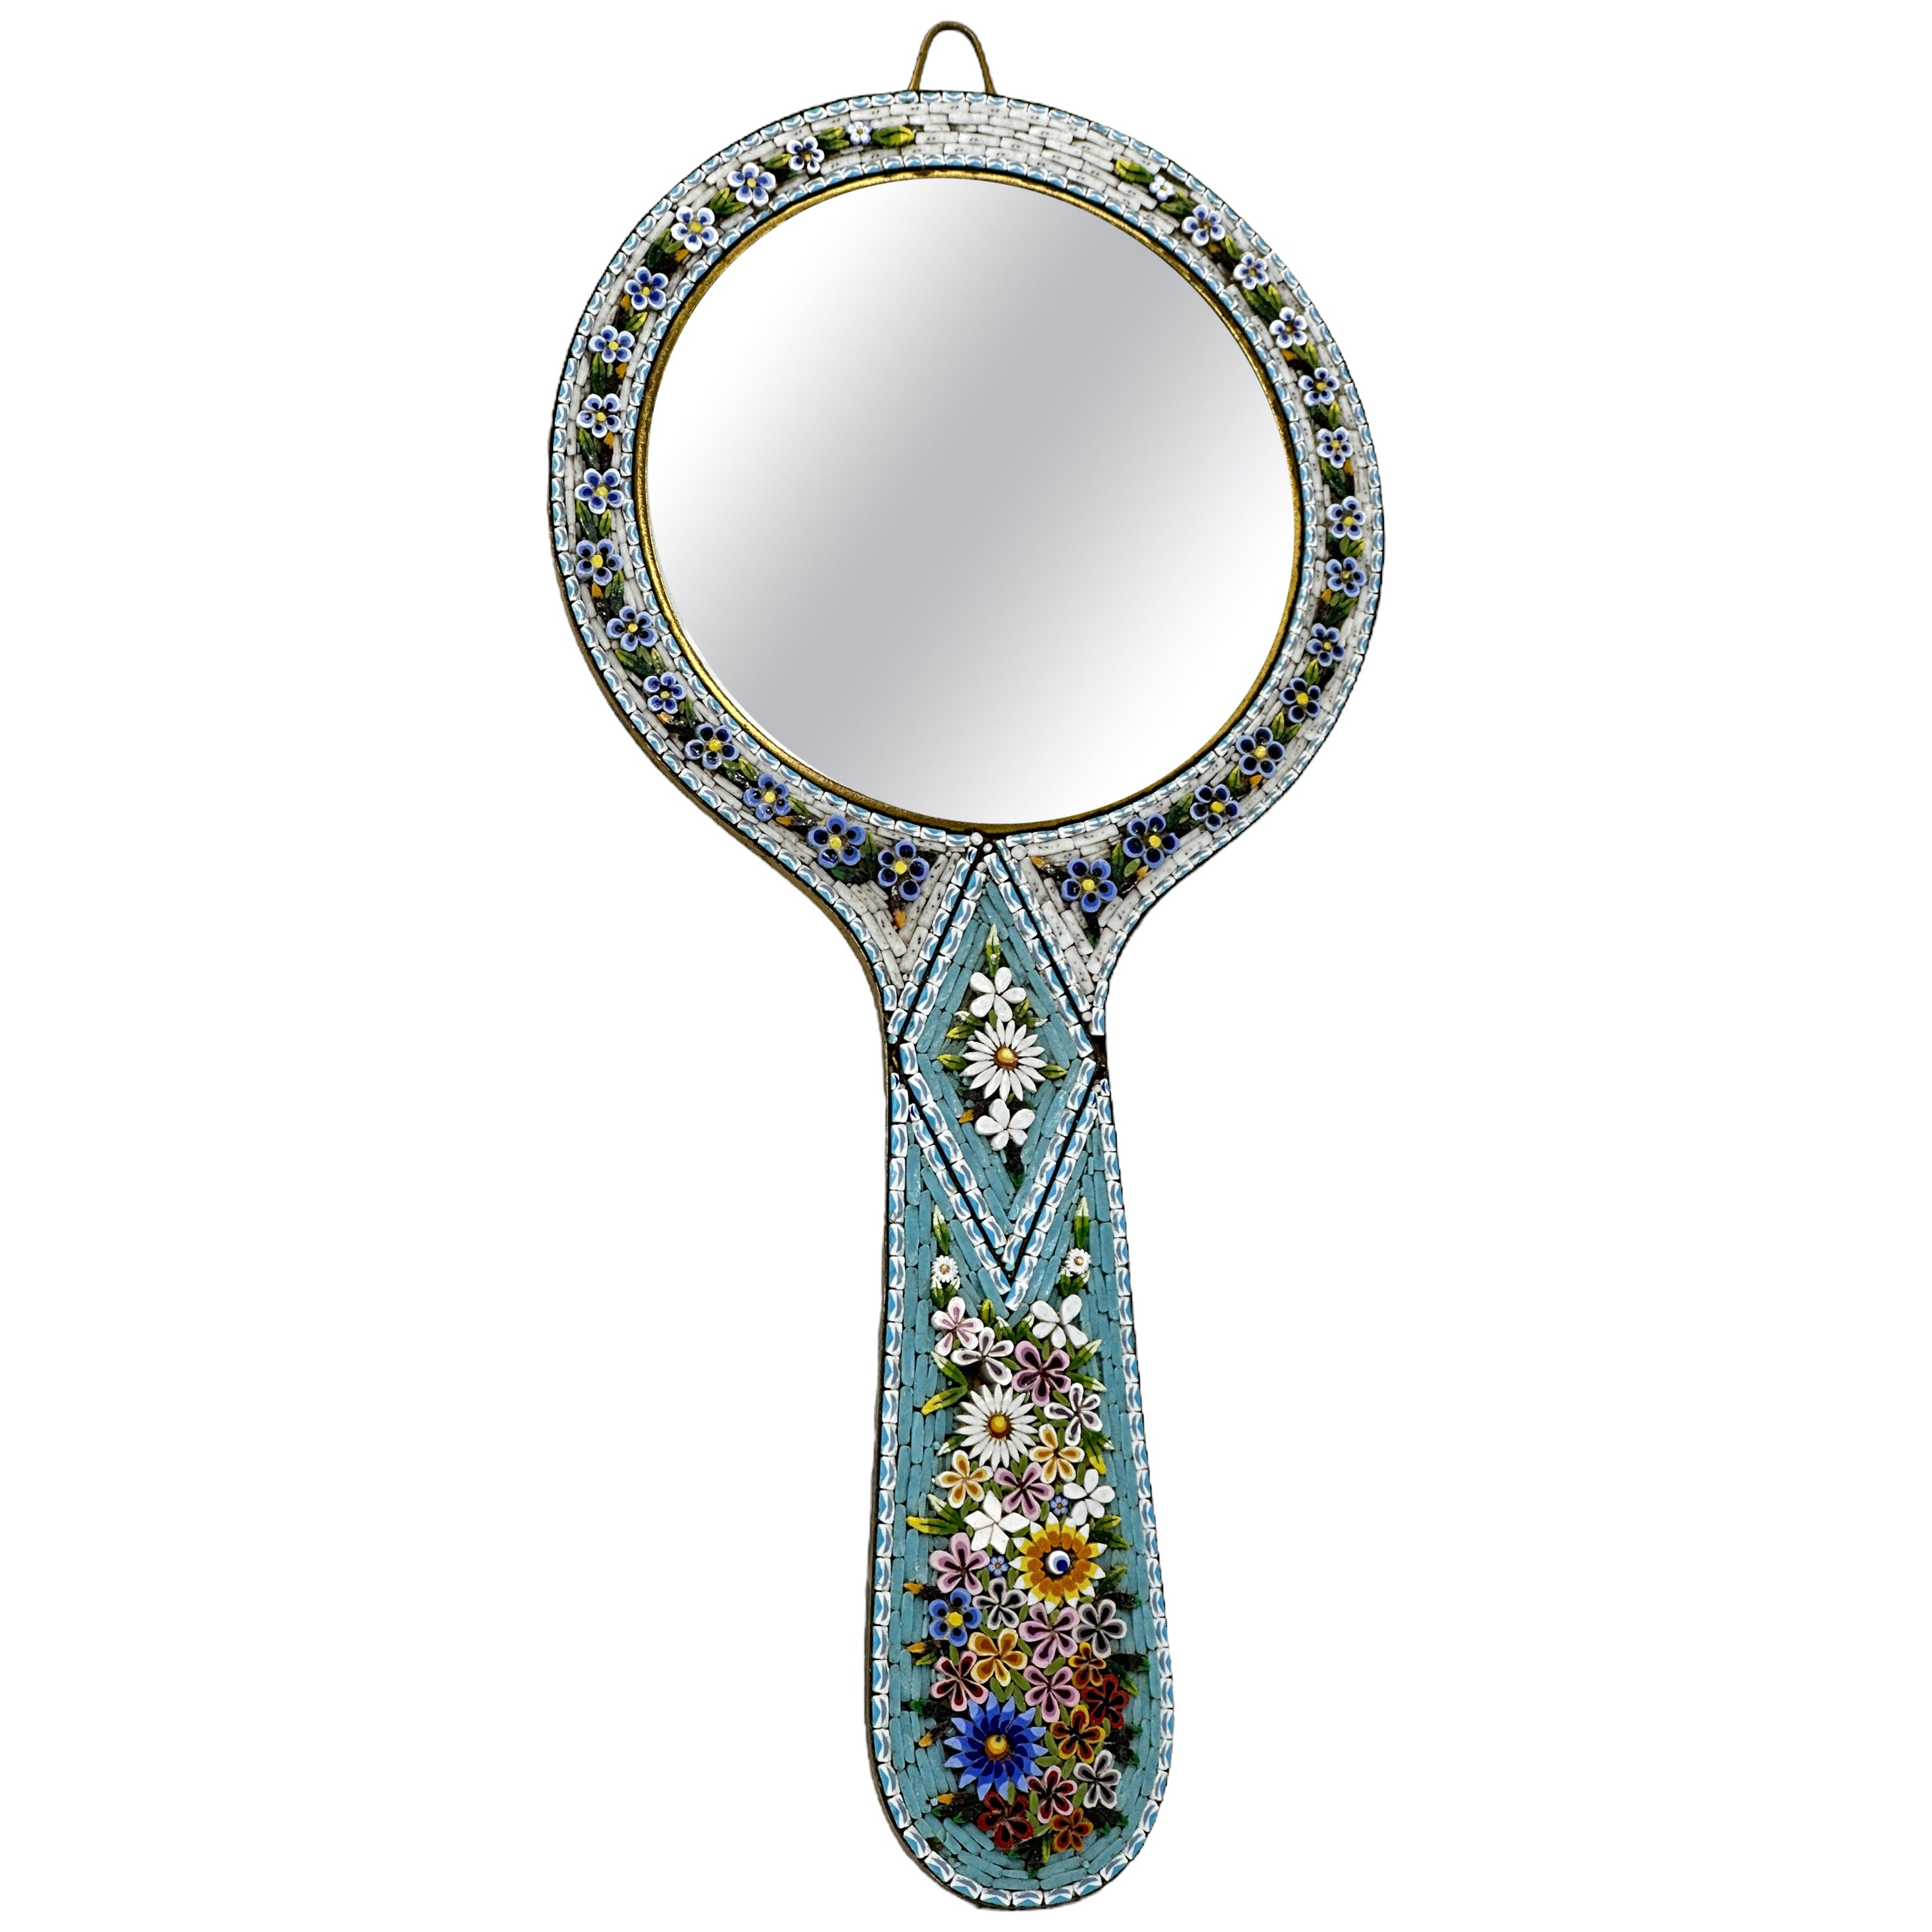 Micro Mosaic Murano Glass Handheld or Wall Vanity Mirror, Italy, Venetian Venice